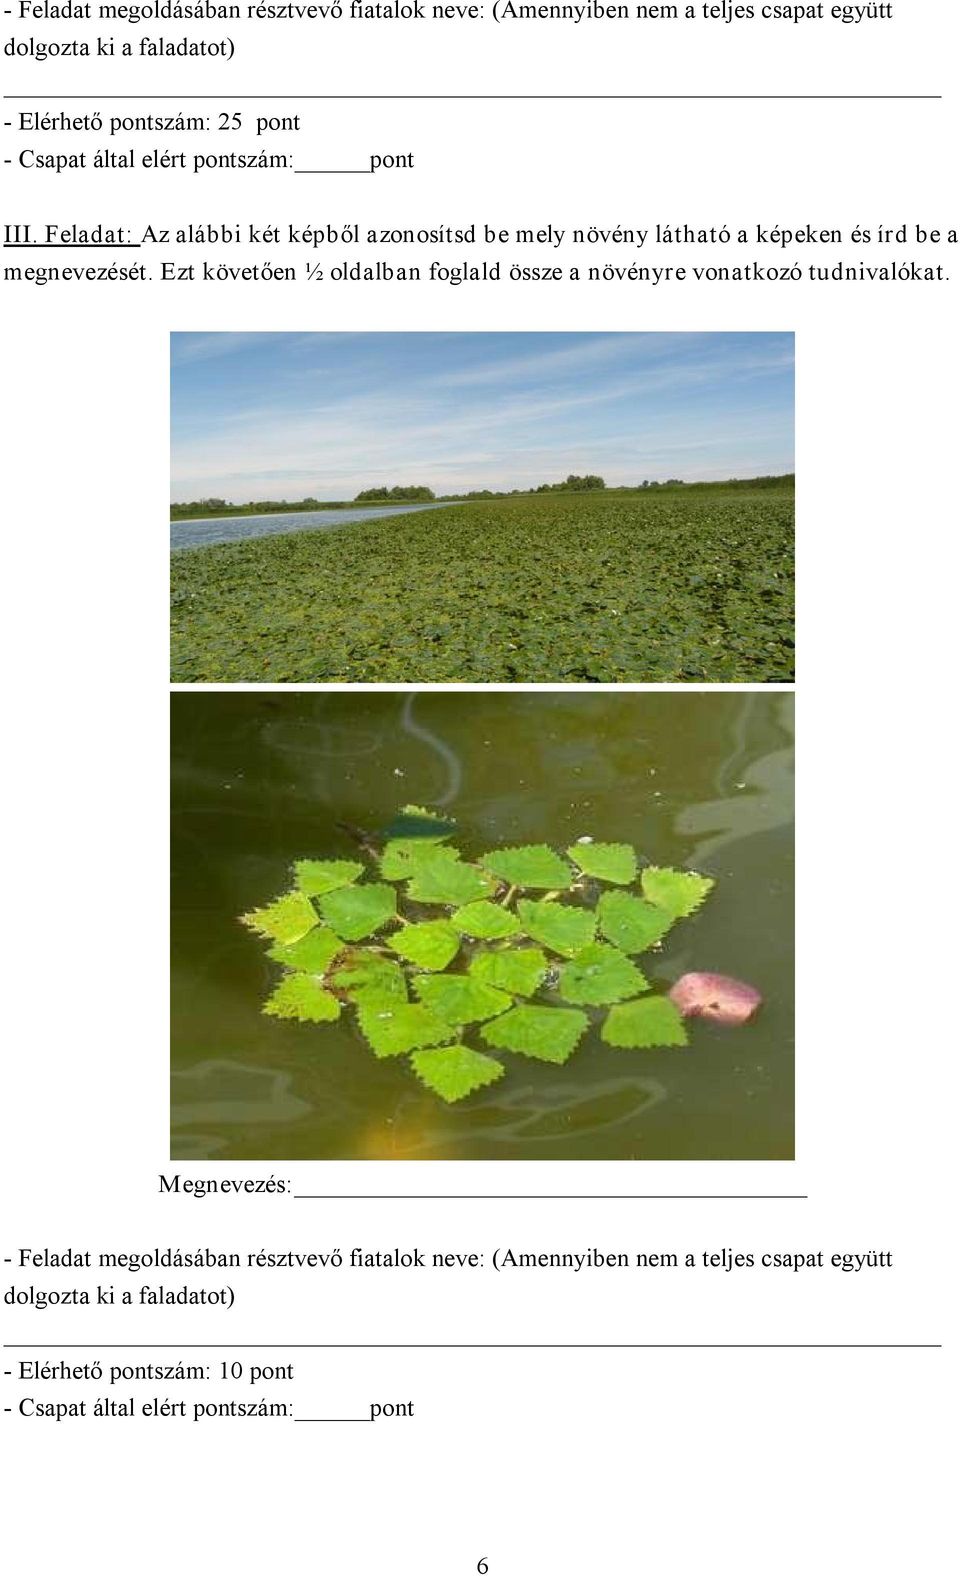 Feladat: Az alábbi két képből azonosítsd be mely növény látható a képeken és írd be a megnevezését.